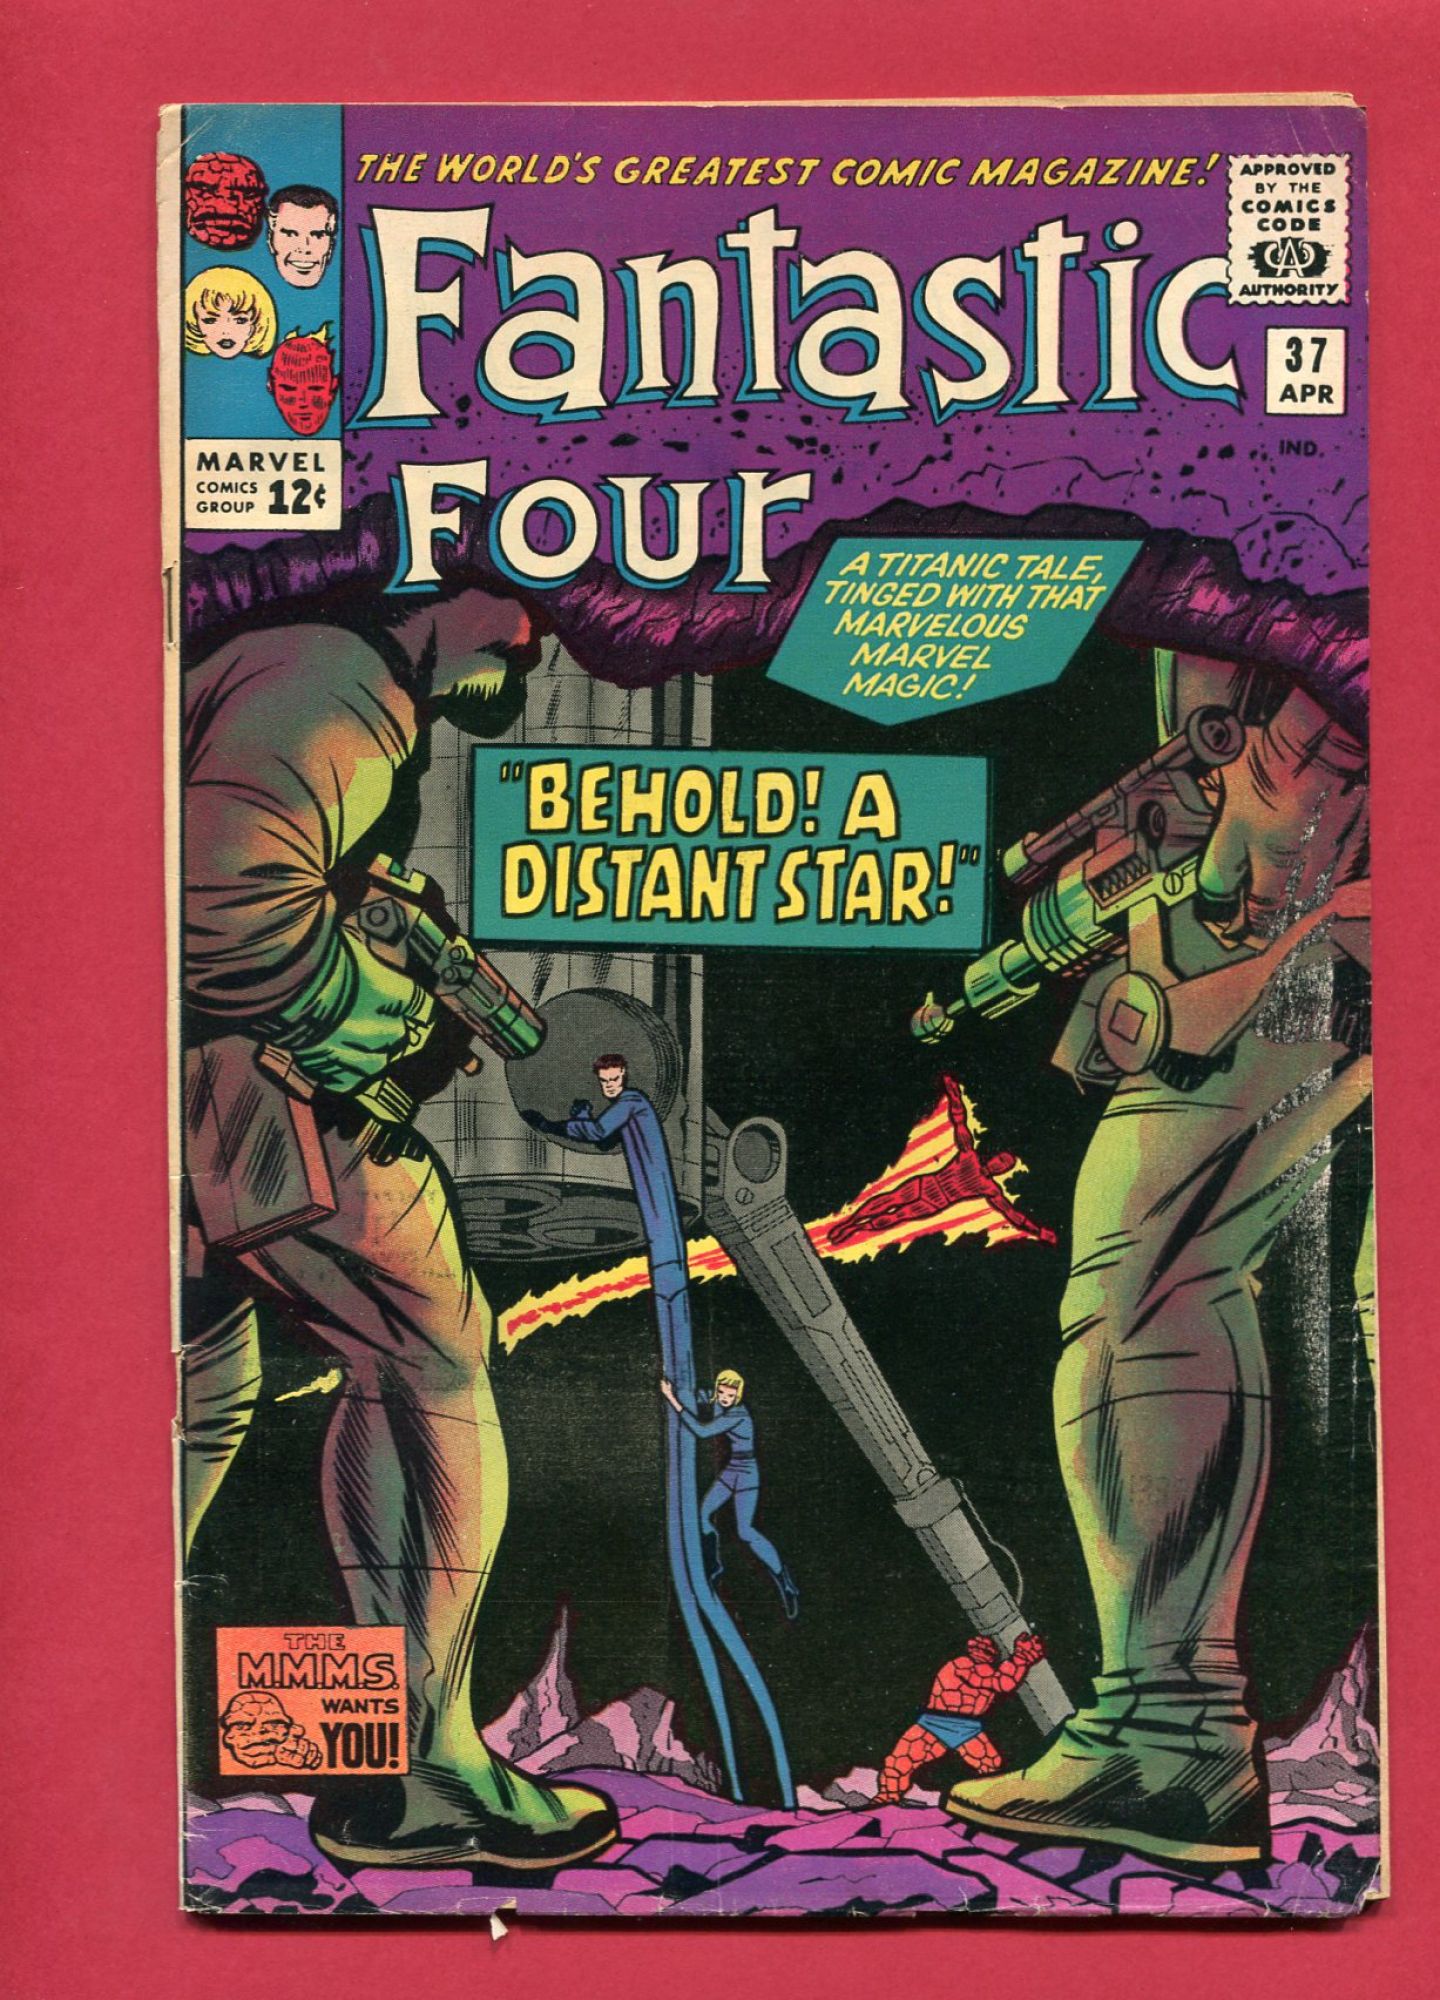 Fantastic Four #37, Apr 1965, 4.0 VF